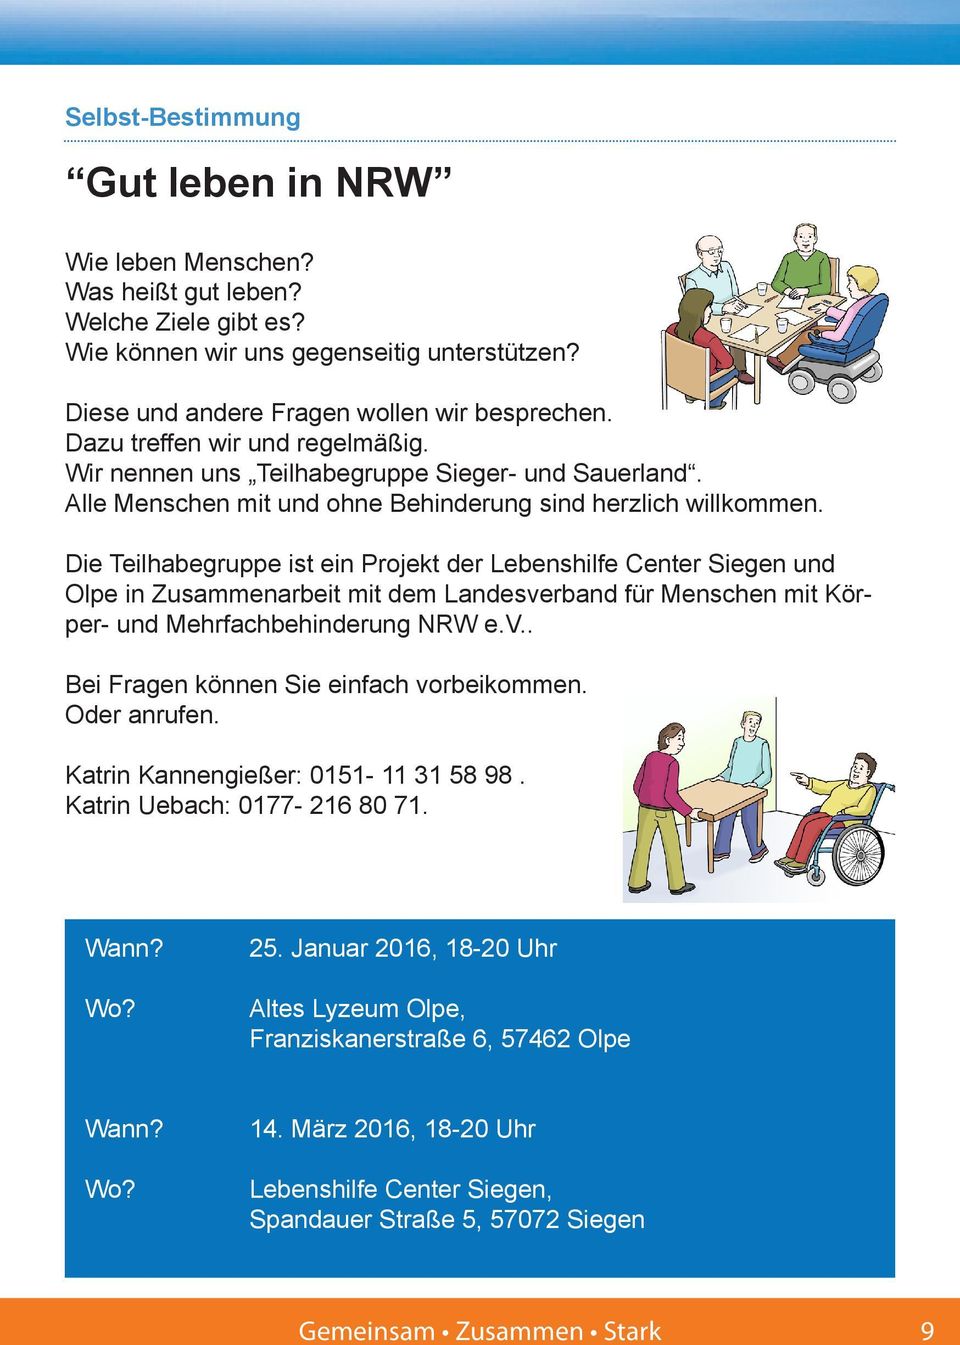 Die Teilhabegruppe ist ein Projekt der Lebenshilfe Center Siegen und Olpe in Zusammenarbeit mit dem Landesverband für Menschen mit Körper- und Mehrfachbehinderung NRW e.v.. Bei Fragen können Sie einfach vorbeikommen.